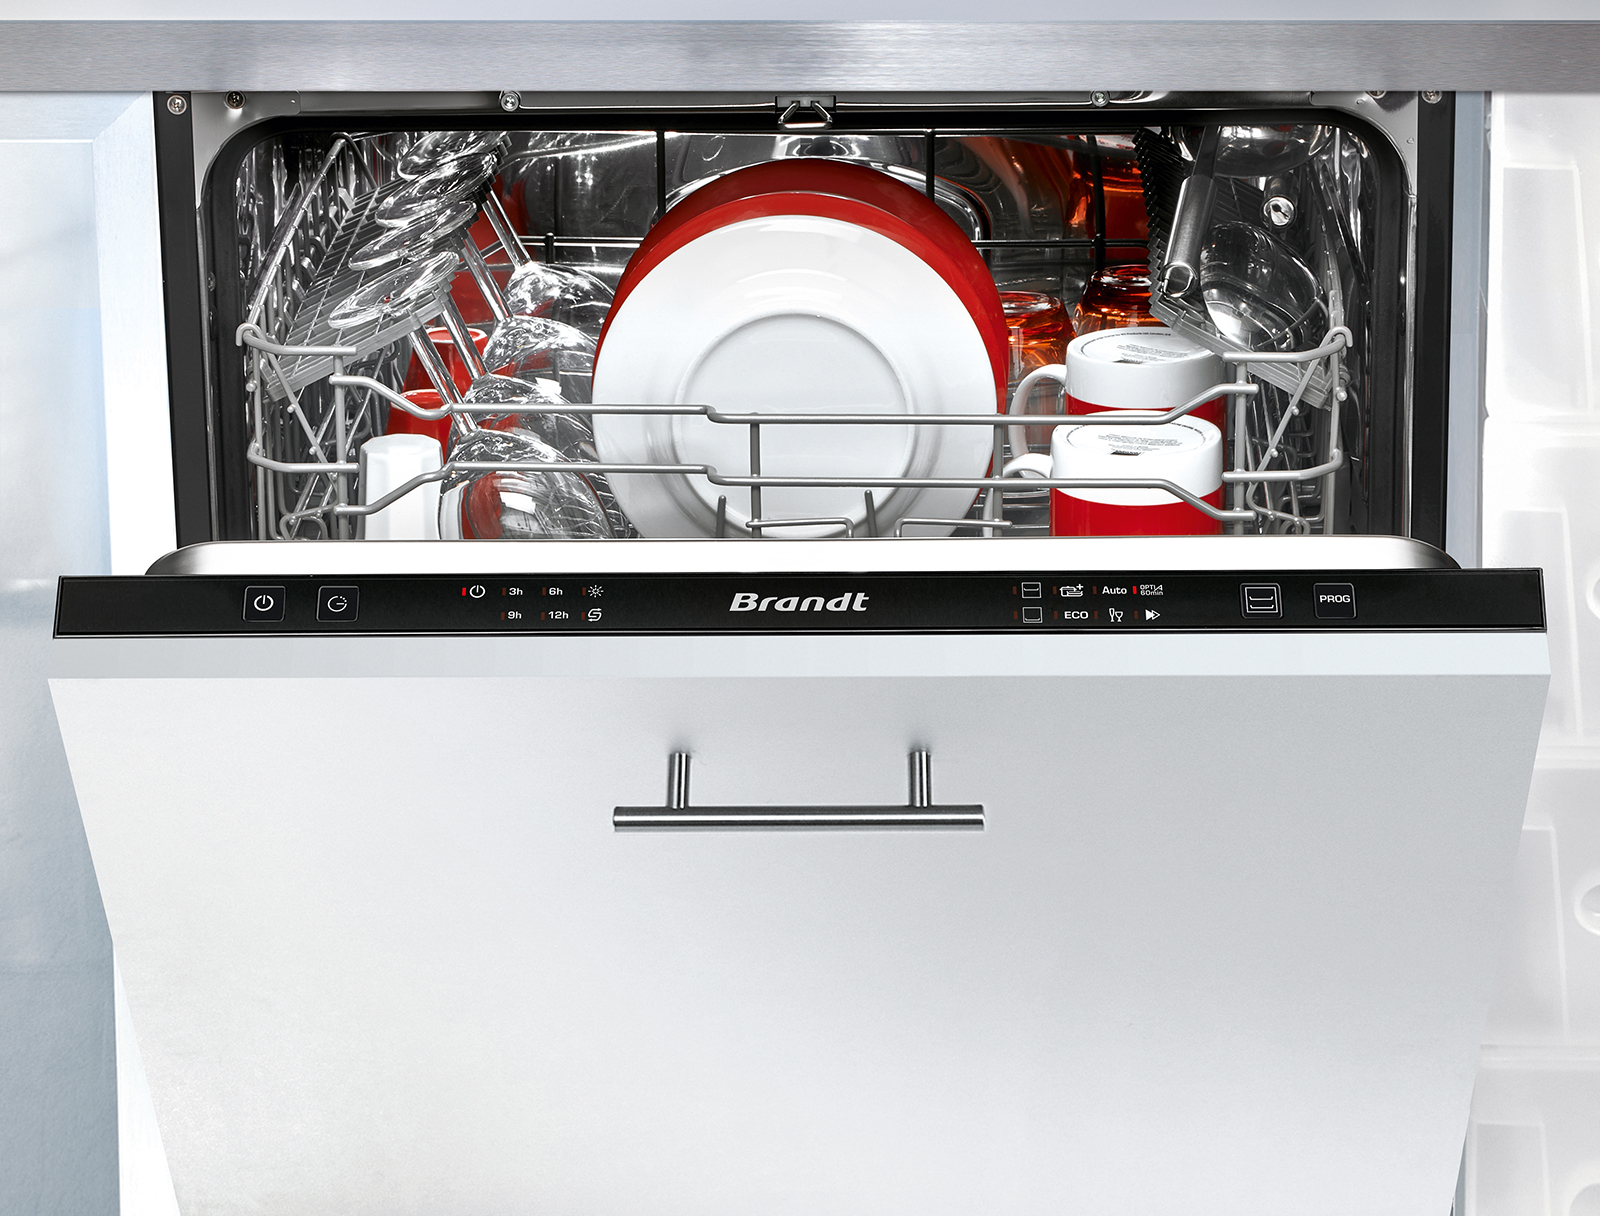 Lave-vaisselle Tout Intégrable 60 cm AirDry 13 couverts Lave-vaisselle  encastrable